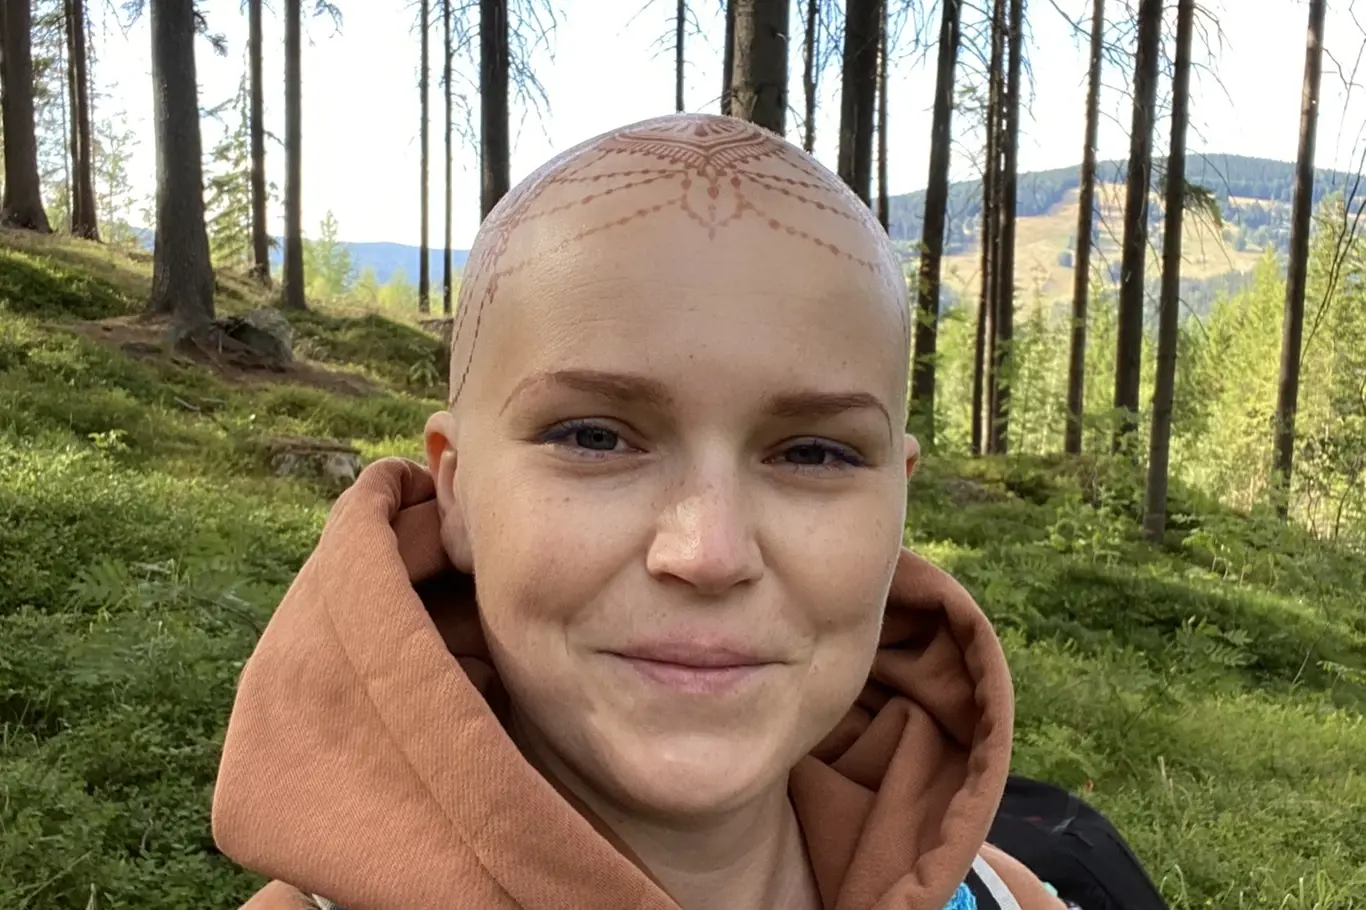 Hana bezmála se o zhoubném nádoru dozvěděla loni v březnu